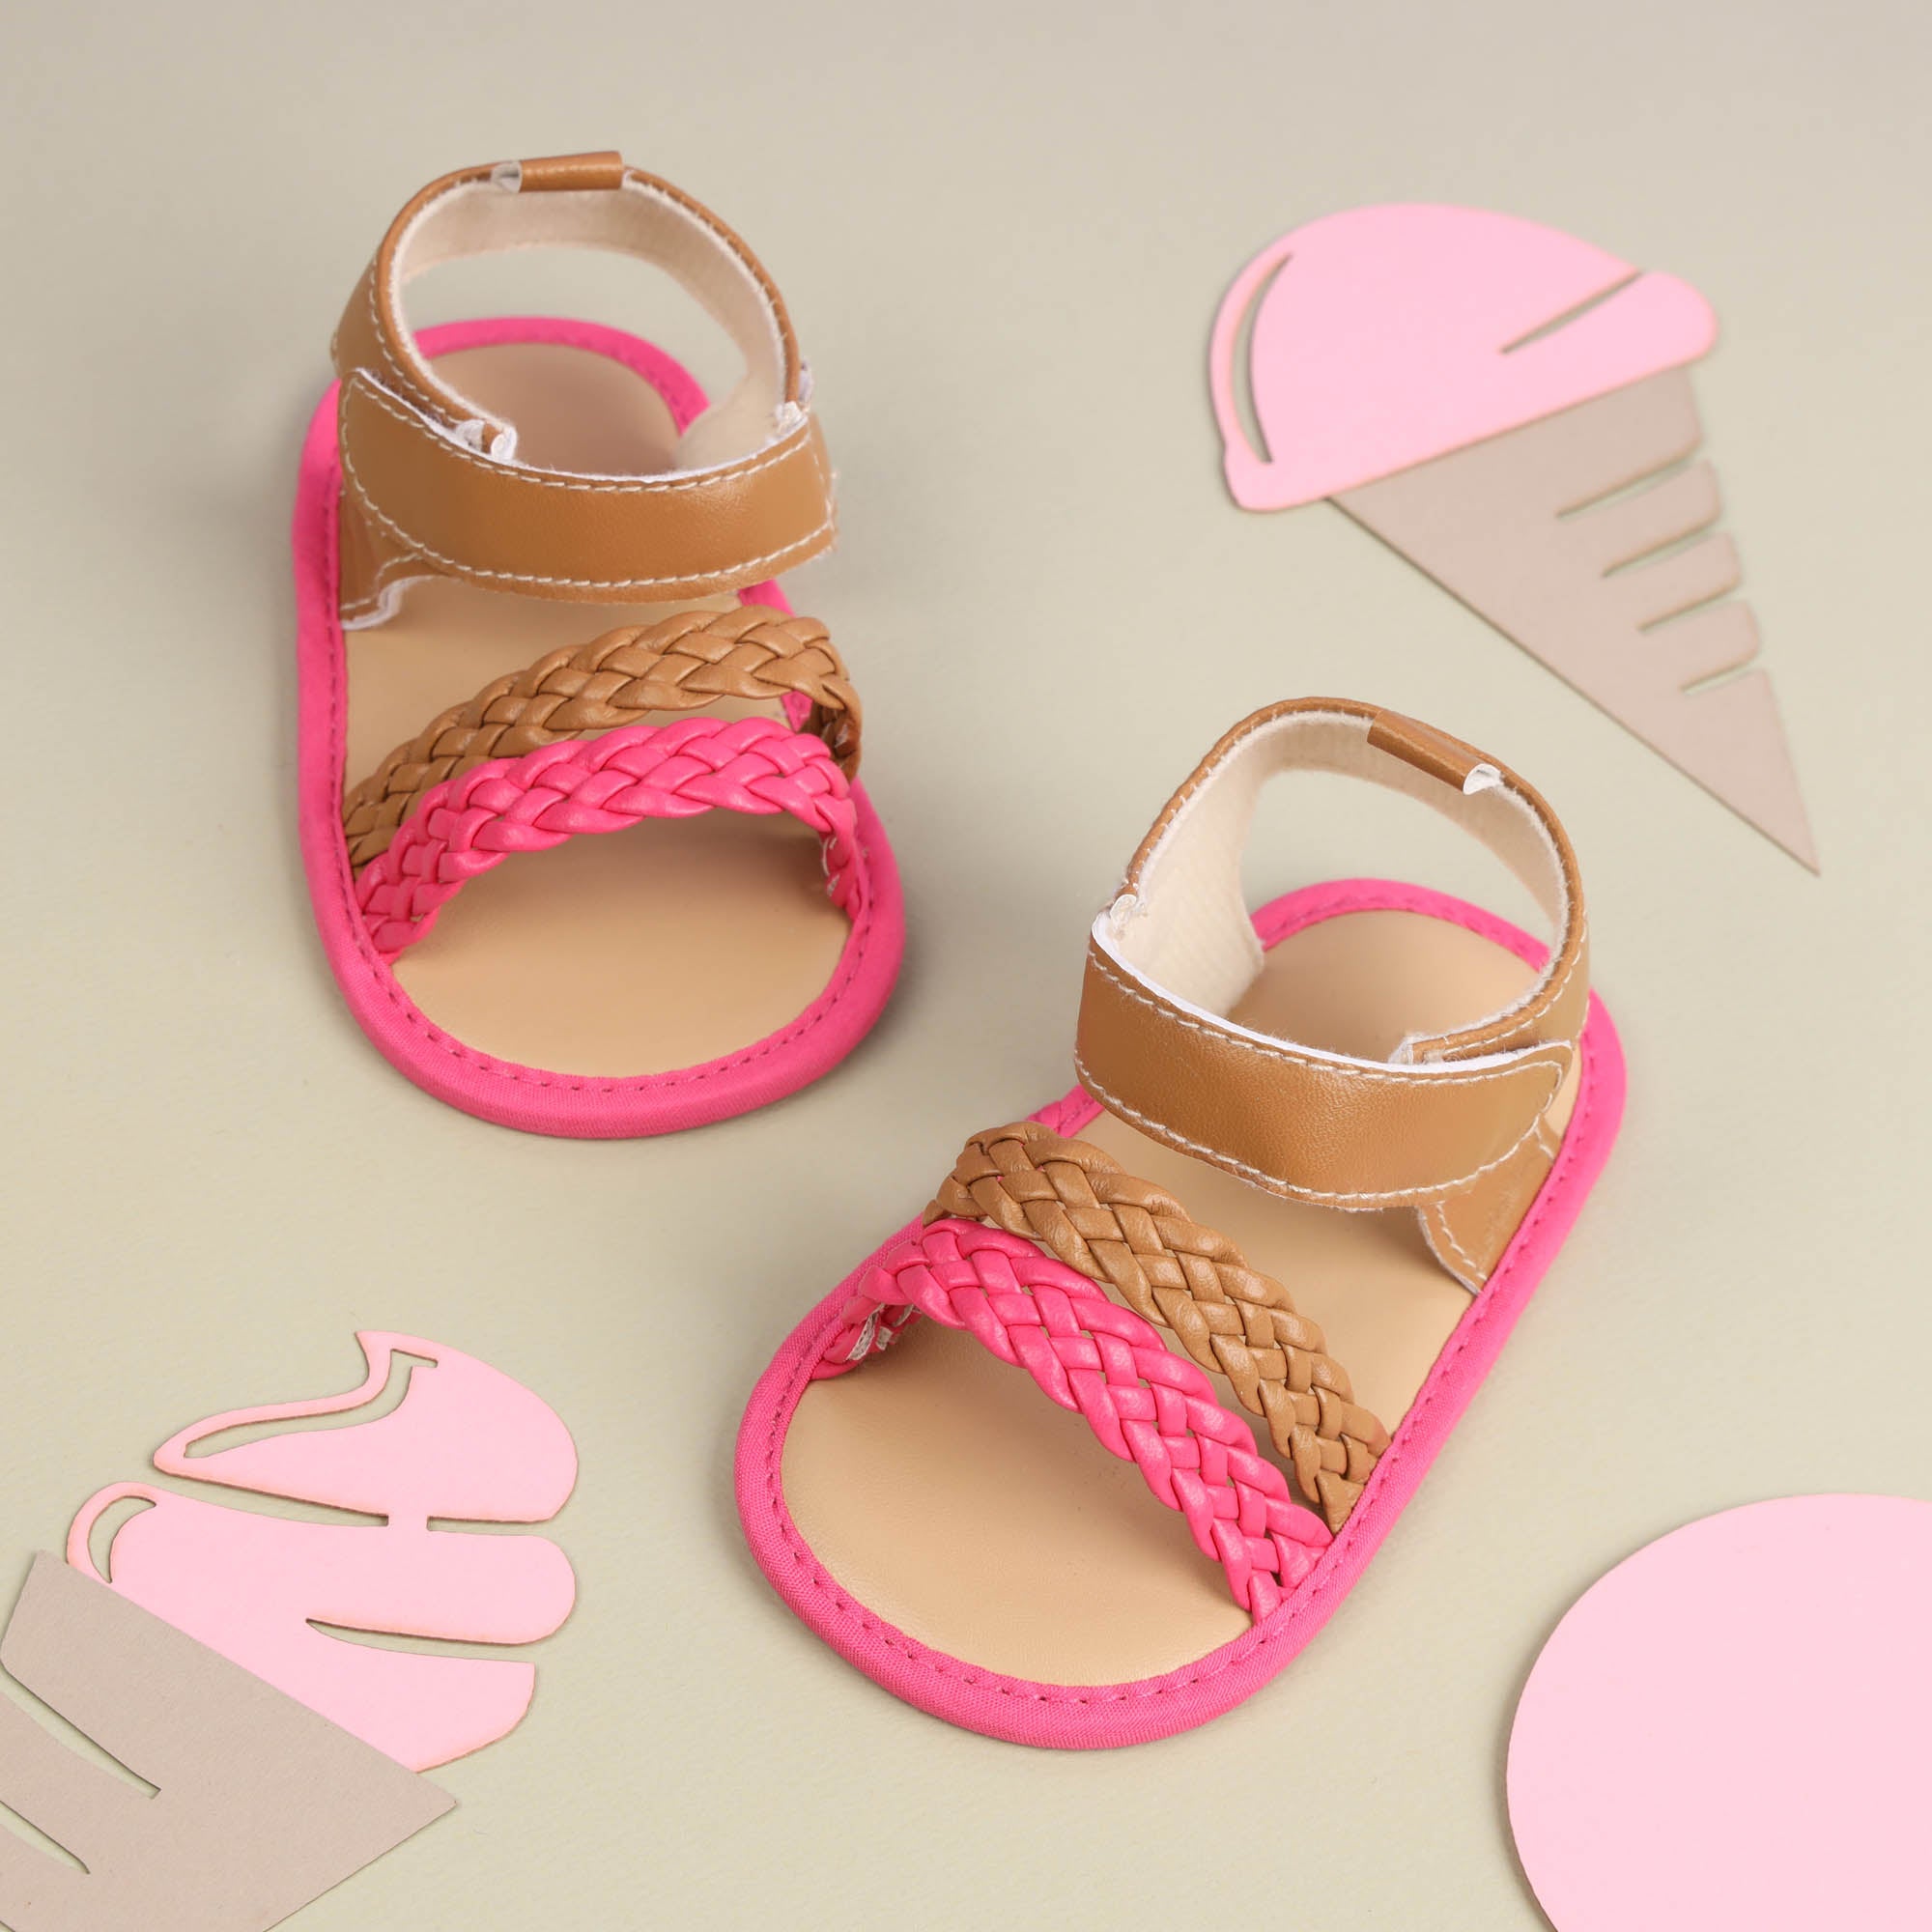 Kicks & Crawl- Tan & Pink Braided Sandals